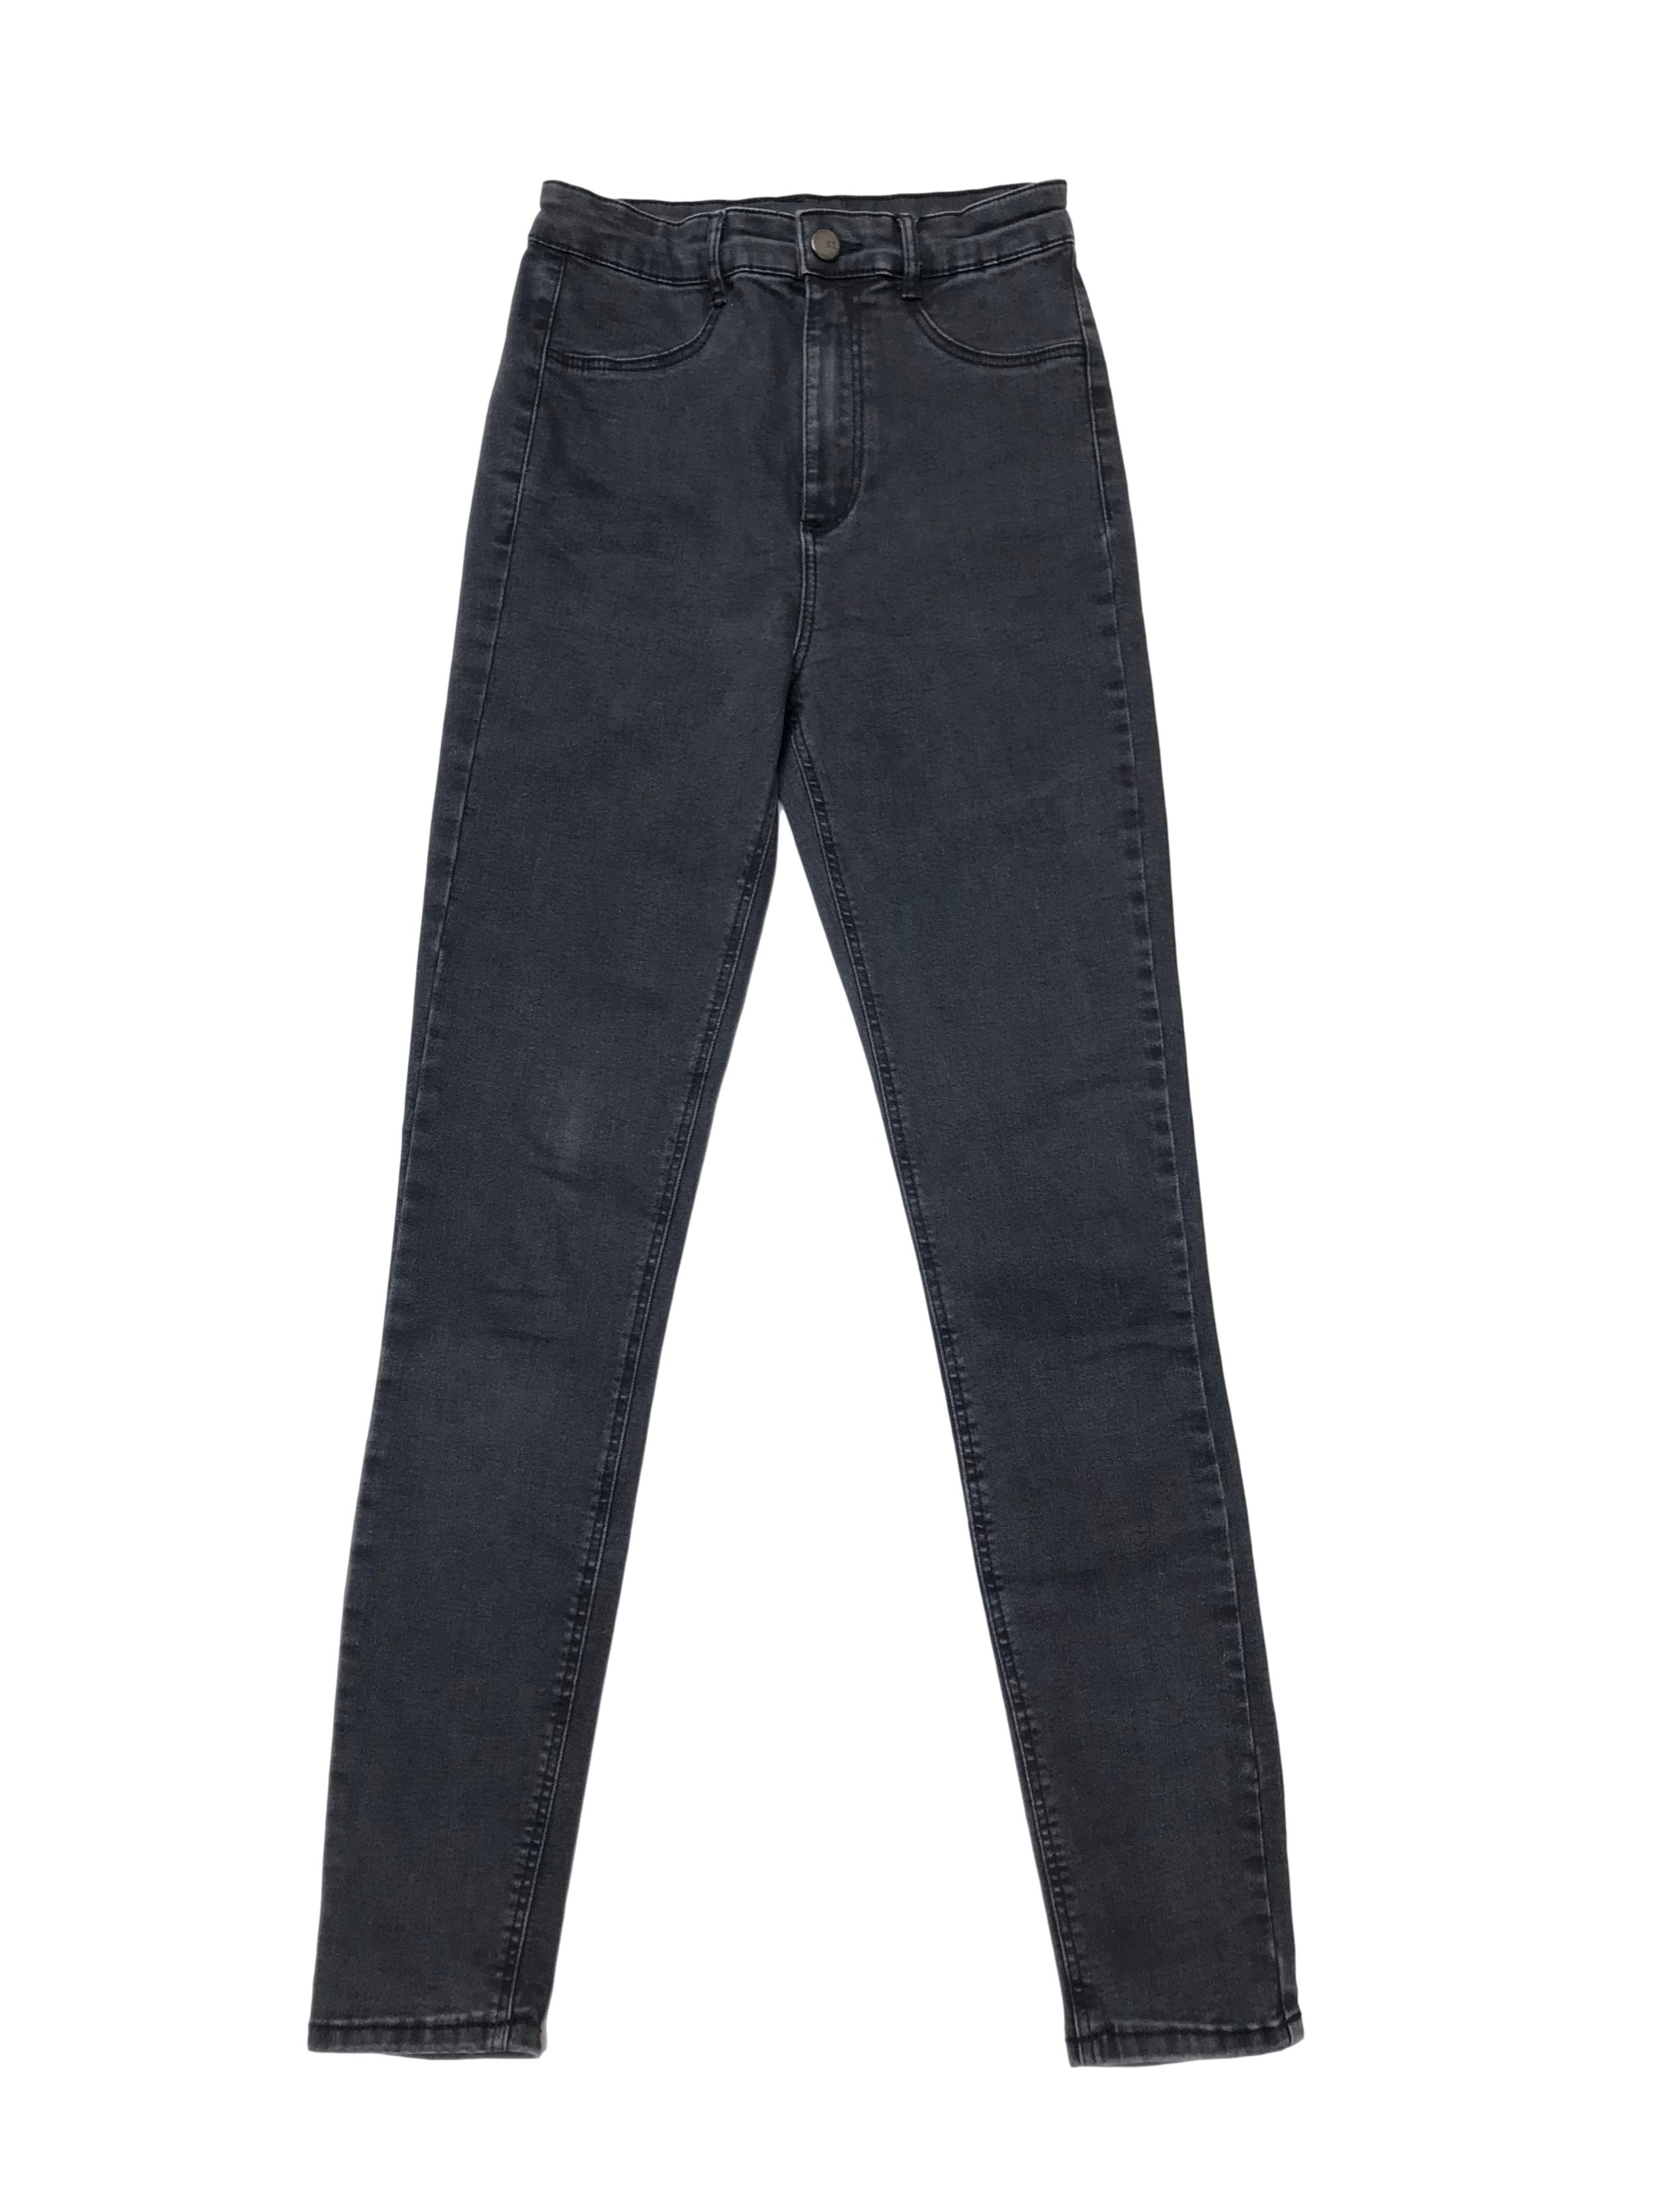 Jegging Zara a la cintura, jean gris efecto lavado stretch con cierre, botón delantero y bolsillos atrás. Cintura 62cm sin estirar